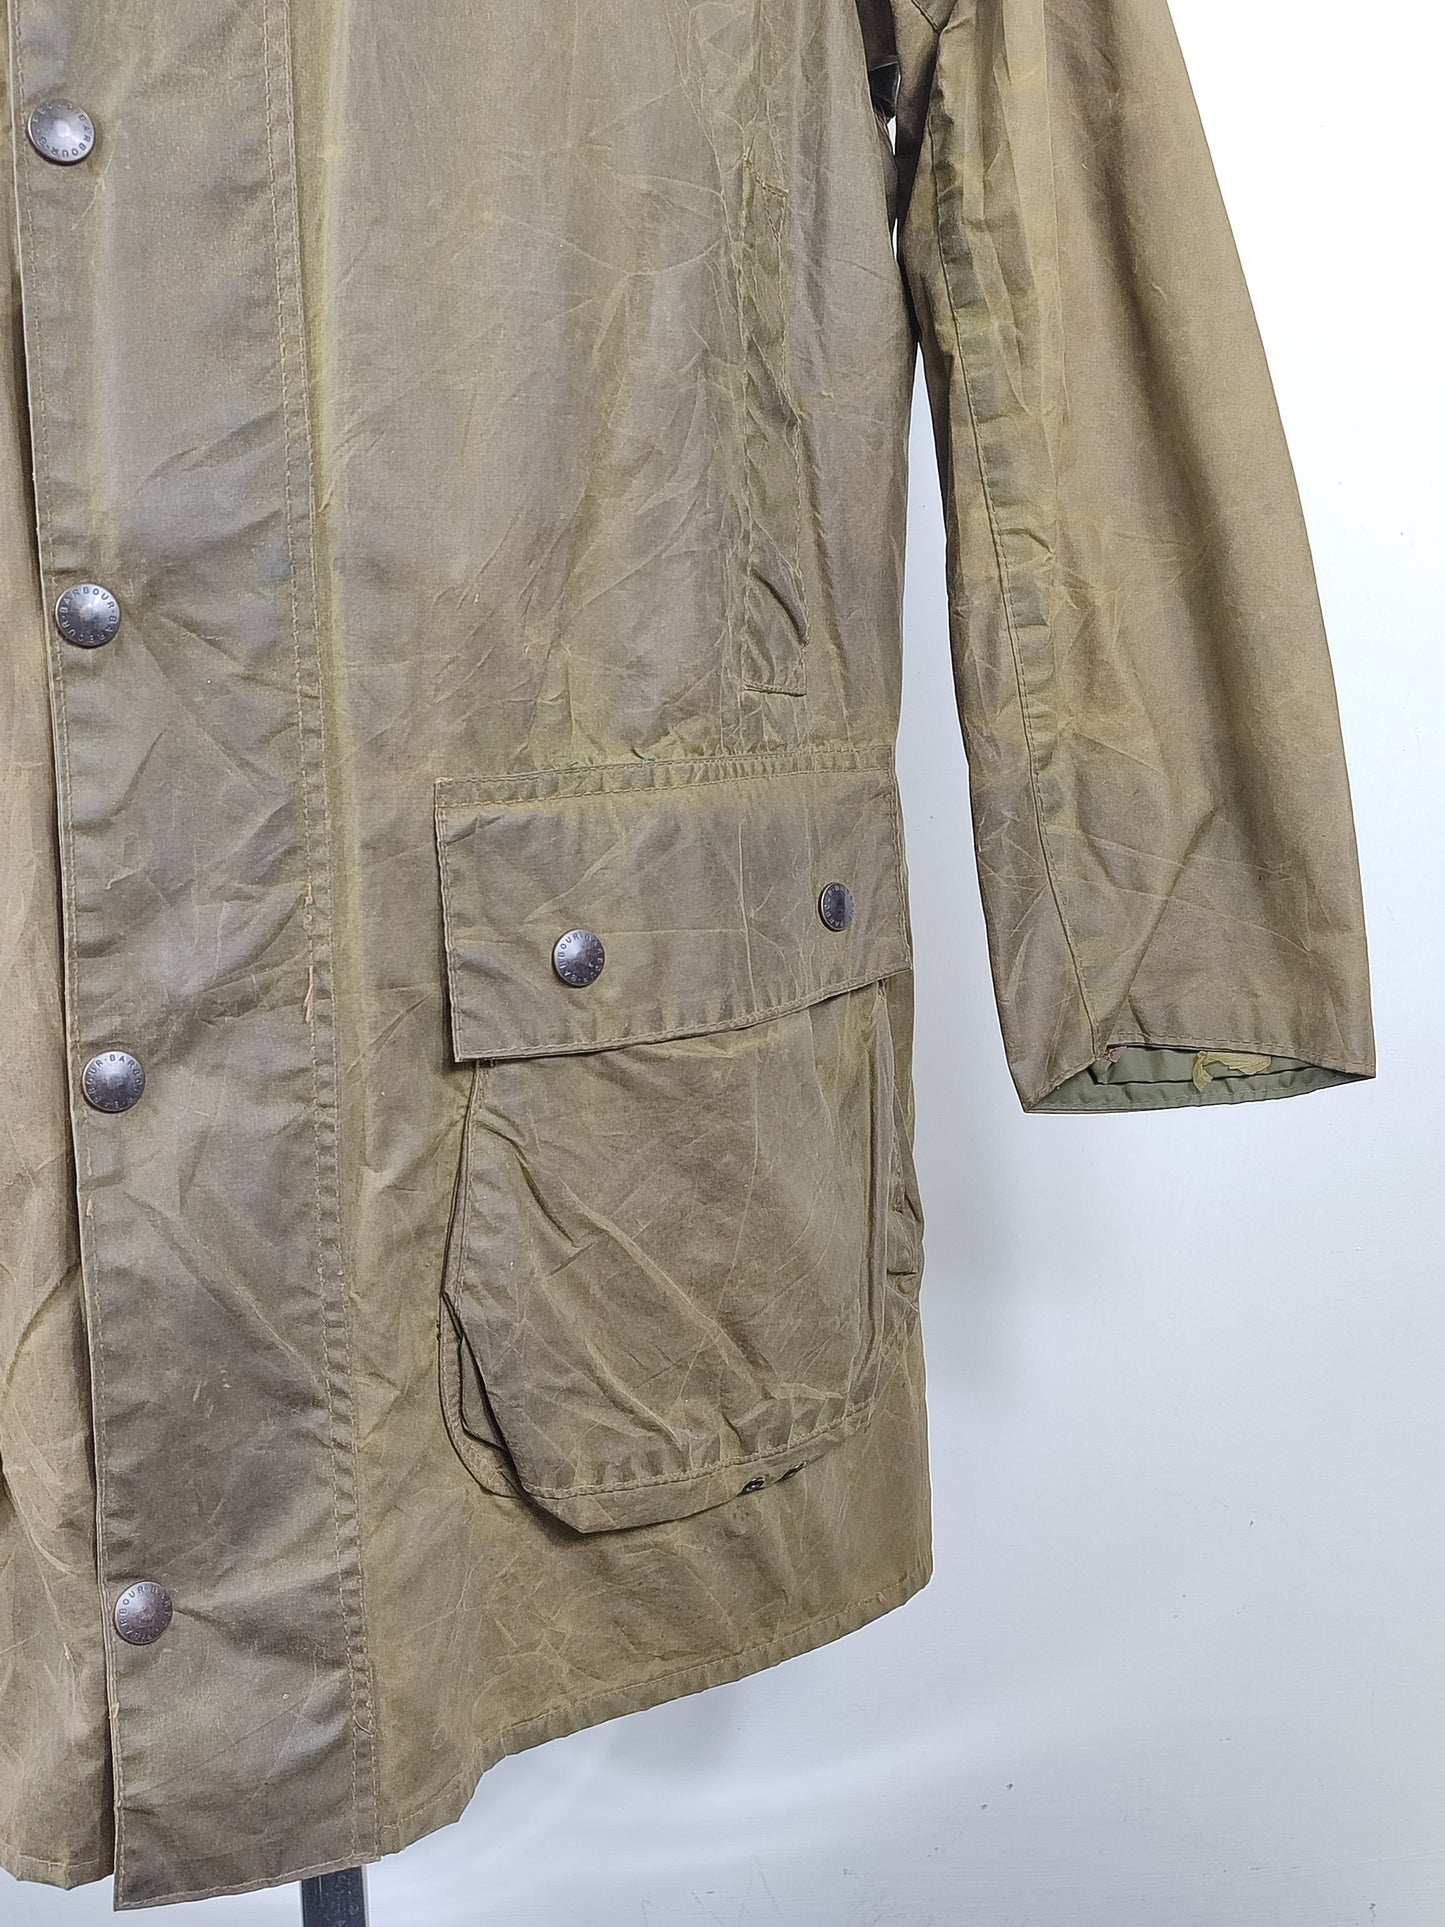 Barbour Border verde cotone Cerato C42/107 cm Green Border Wax Vintage Coat Size Large